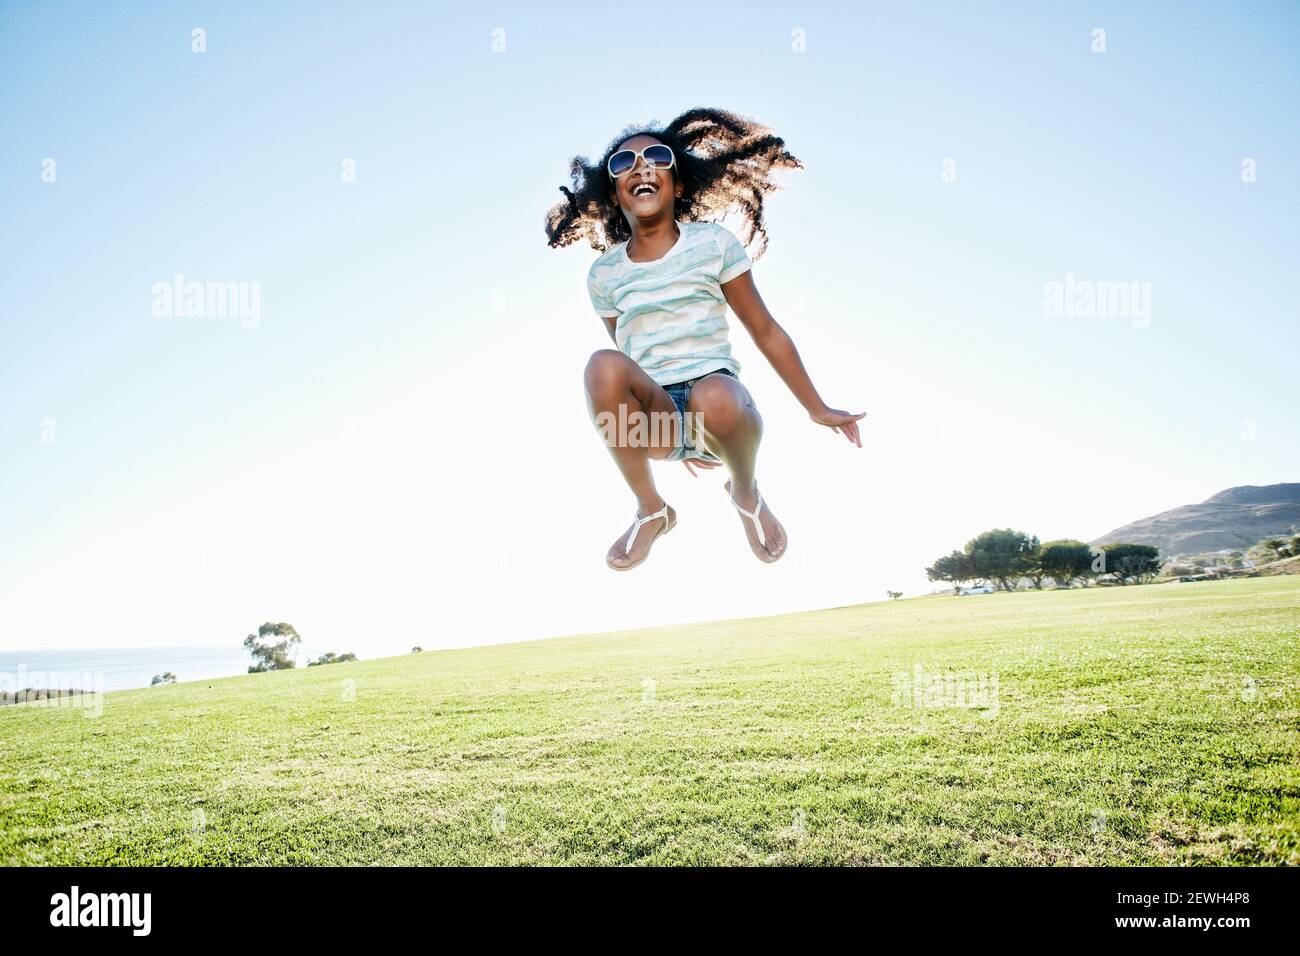 Jeune fille de race mixte avec de longs cheveux bouclés sautant l'air Banque D'Images